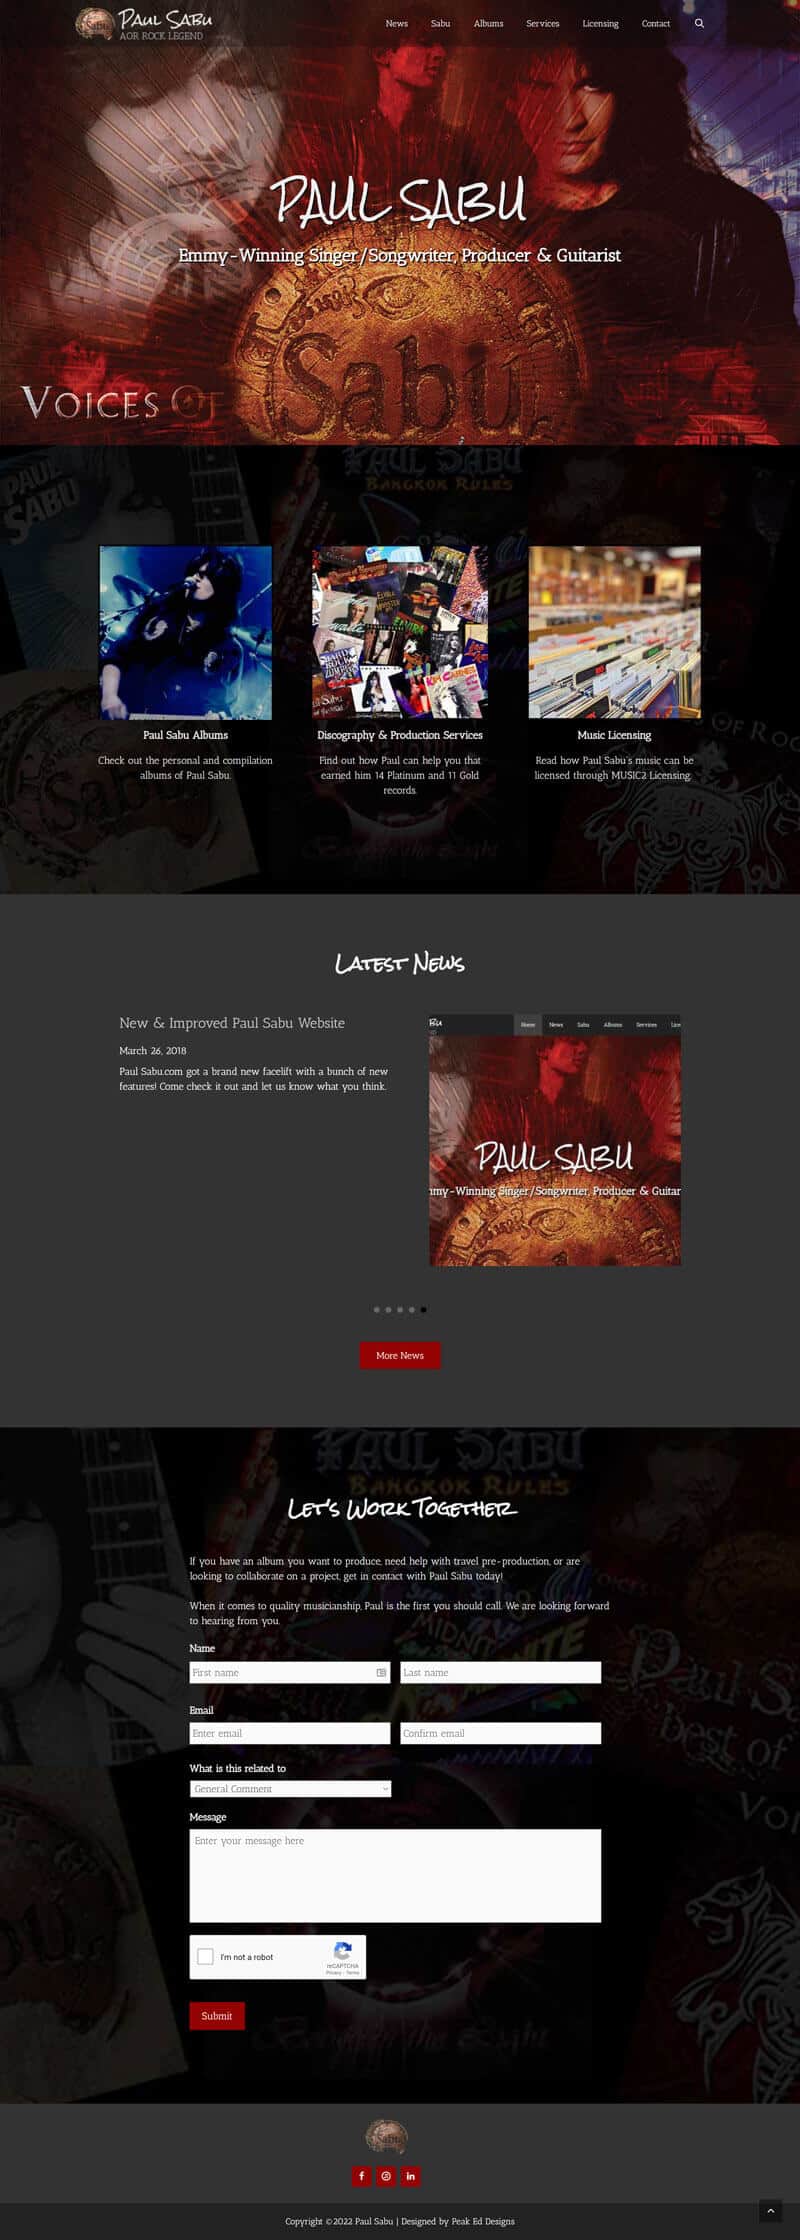 Paul Sabu AOR Rock Legend - portfolio image of the home page